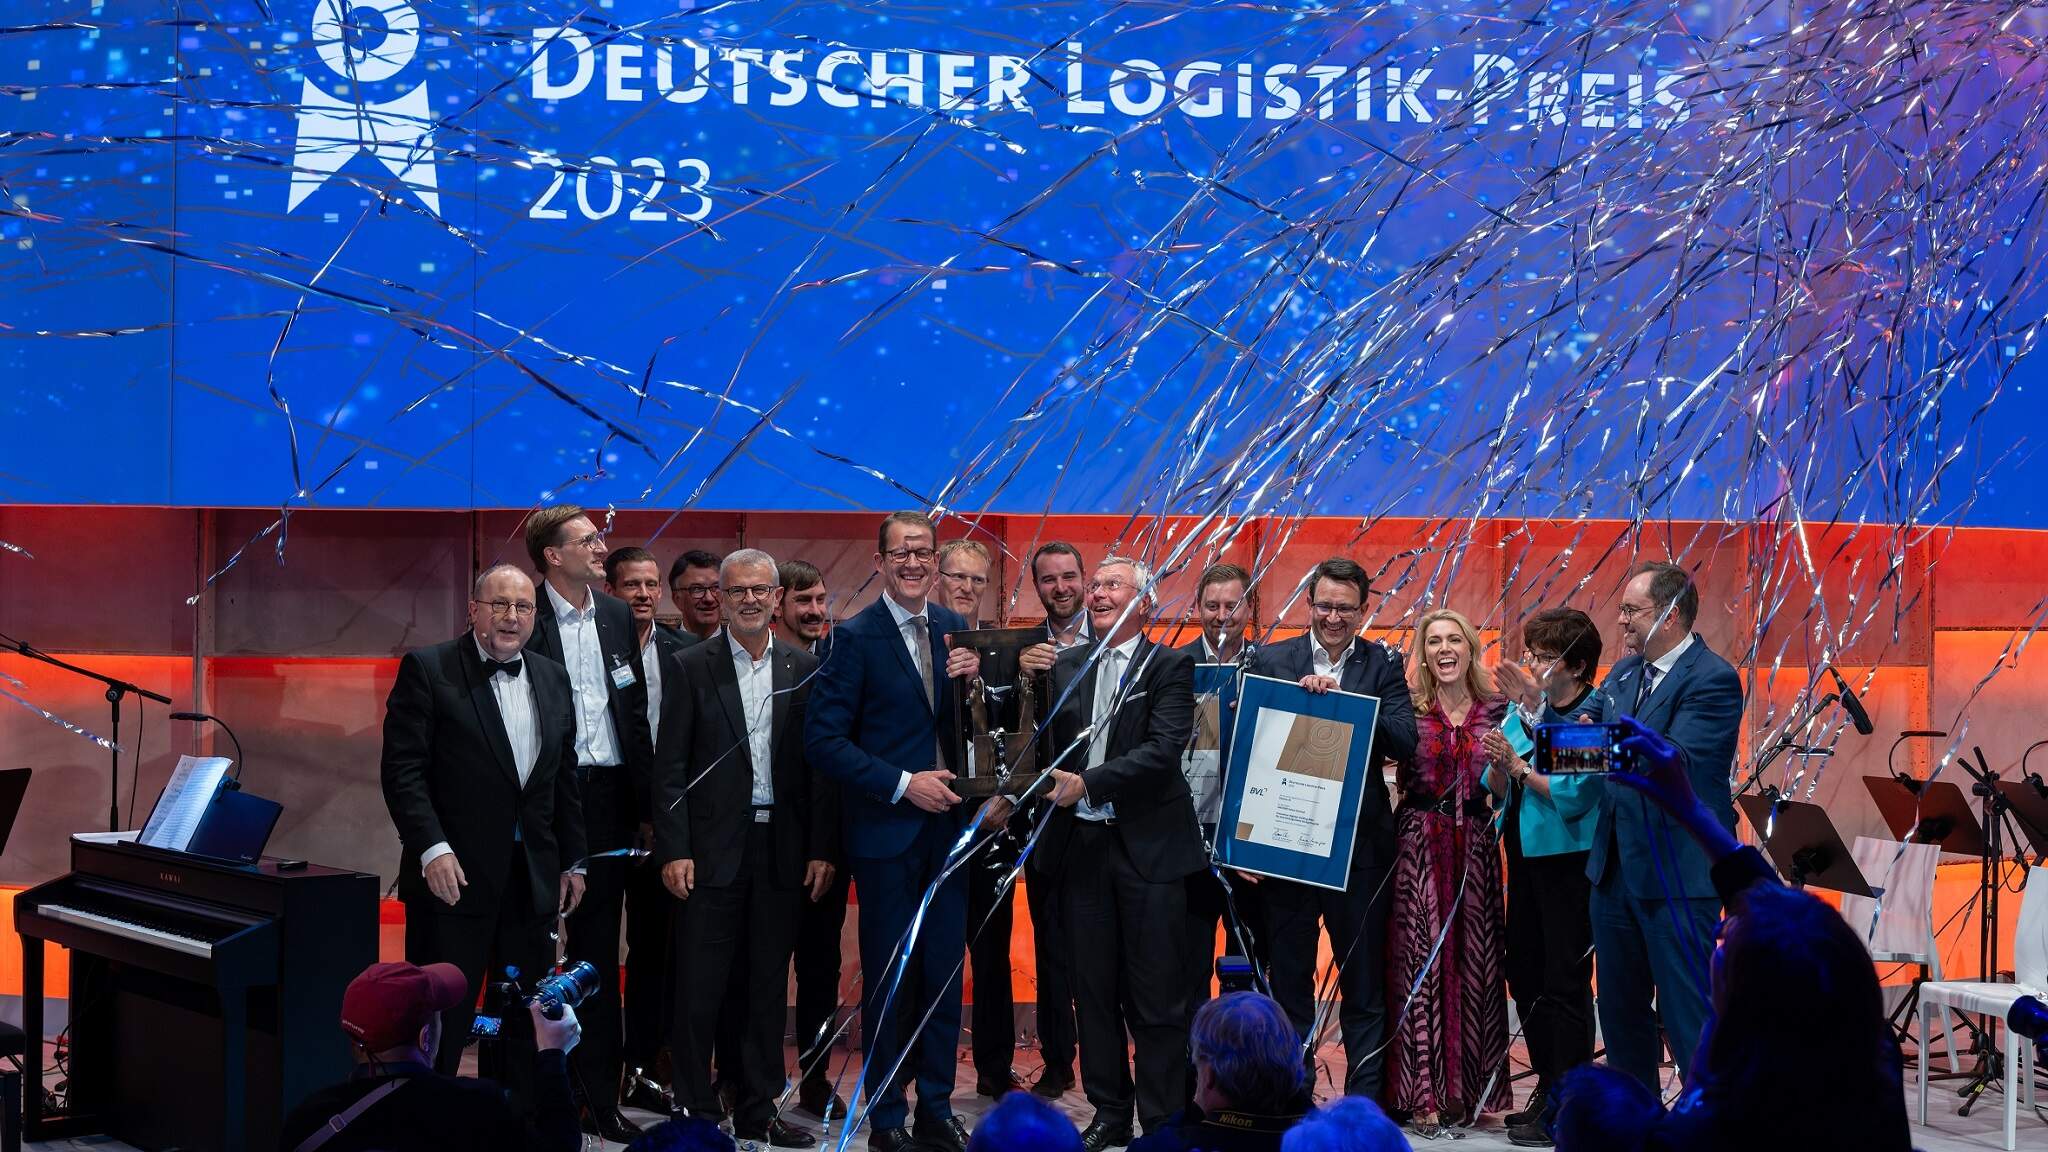 Burkhard Eling, CEO skupiny DACHSER, a Prof. Dr. Dr. h.c. Michael ten Hompel, výkonný ředitel Fraunhoferova IML institutu, přebírají Německou cenu za logistiku společně se svými týmy. Foto: BVL/Bublitz